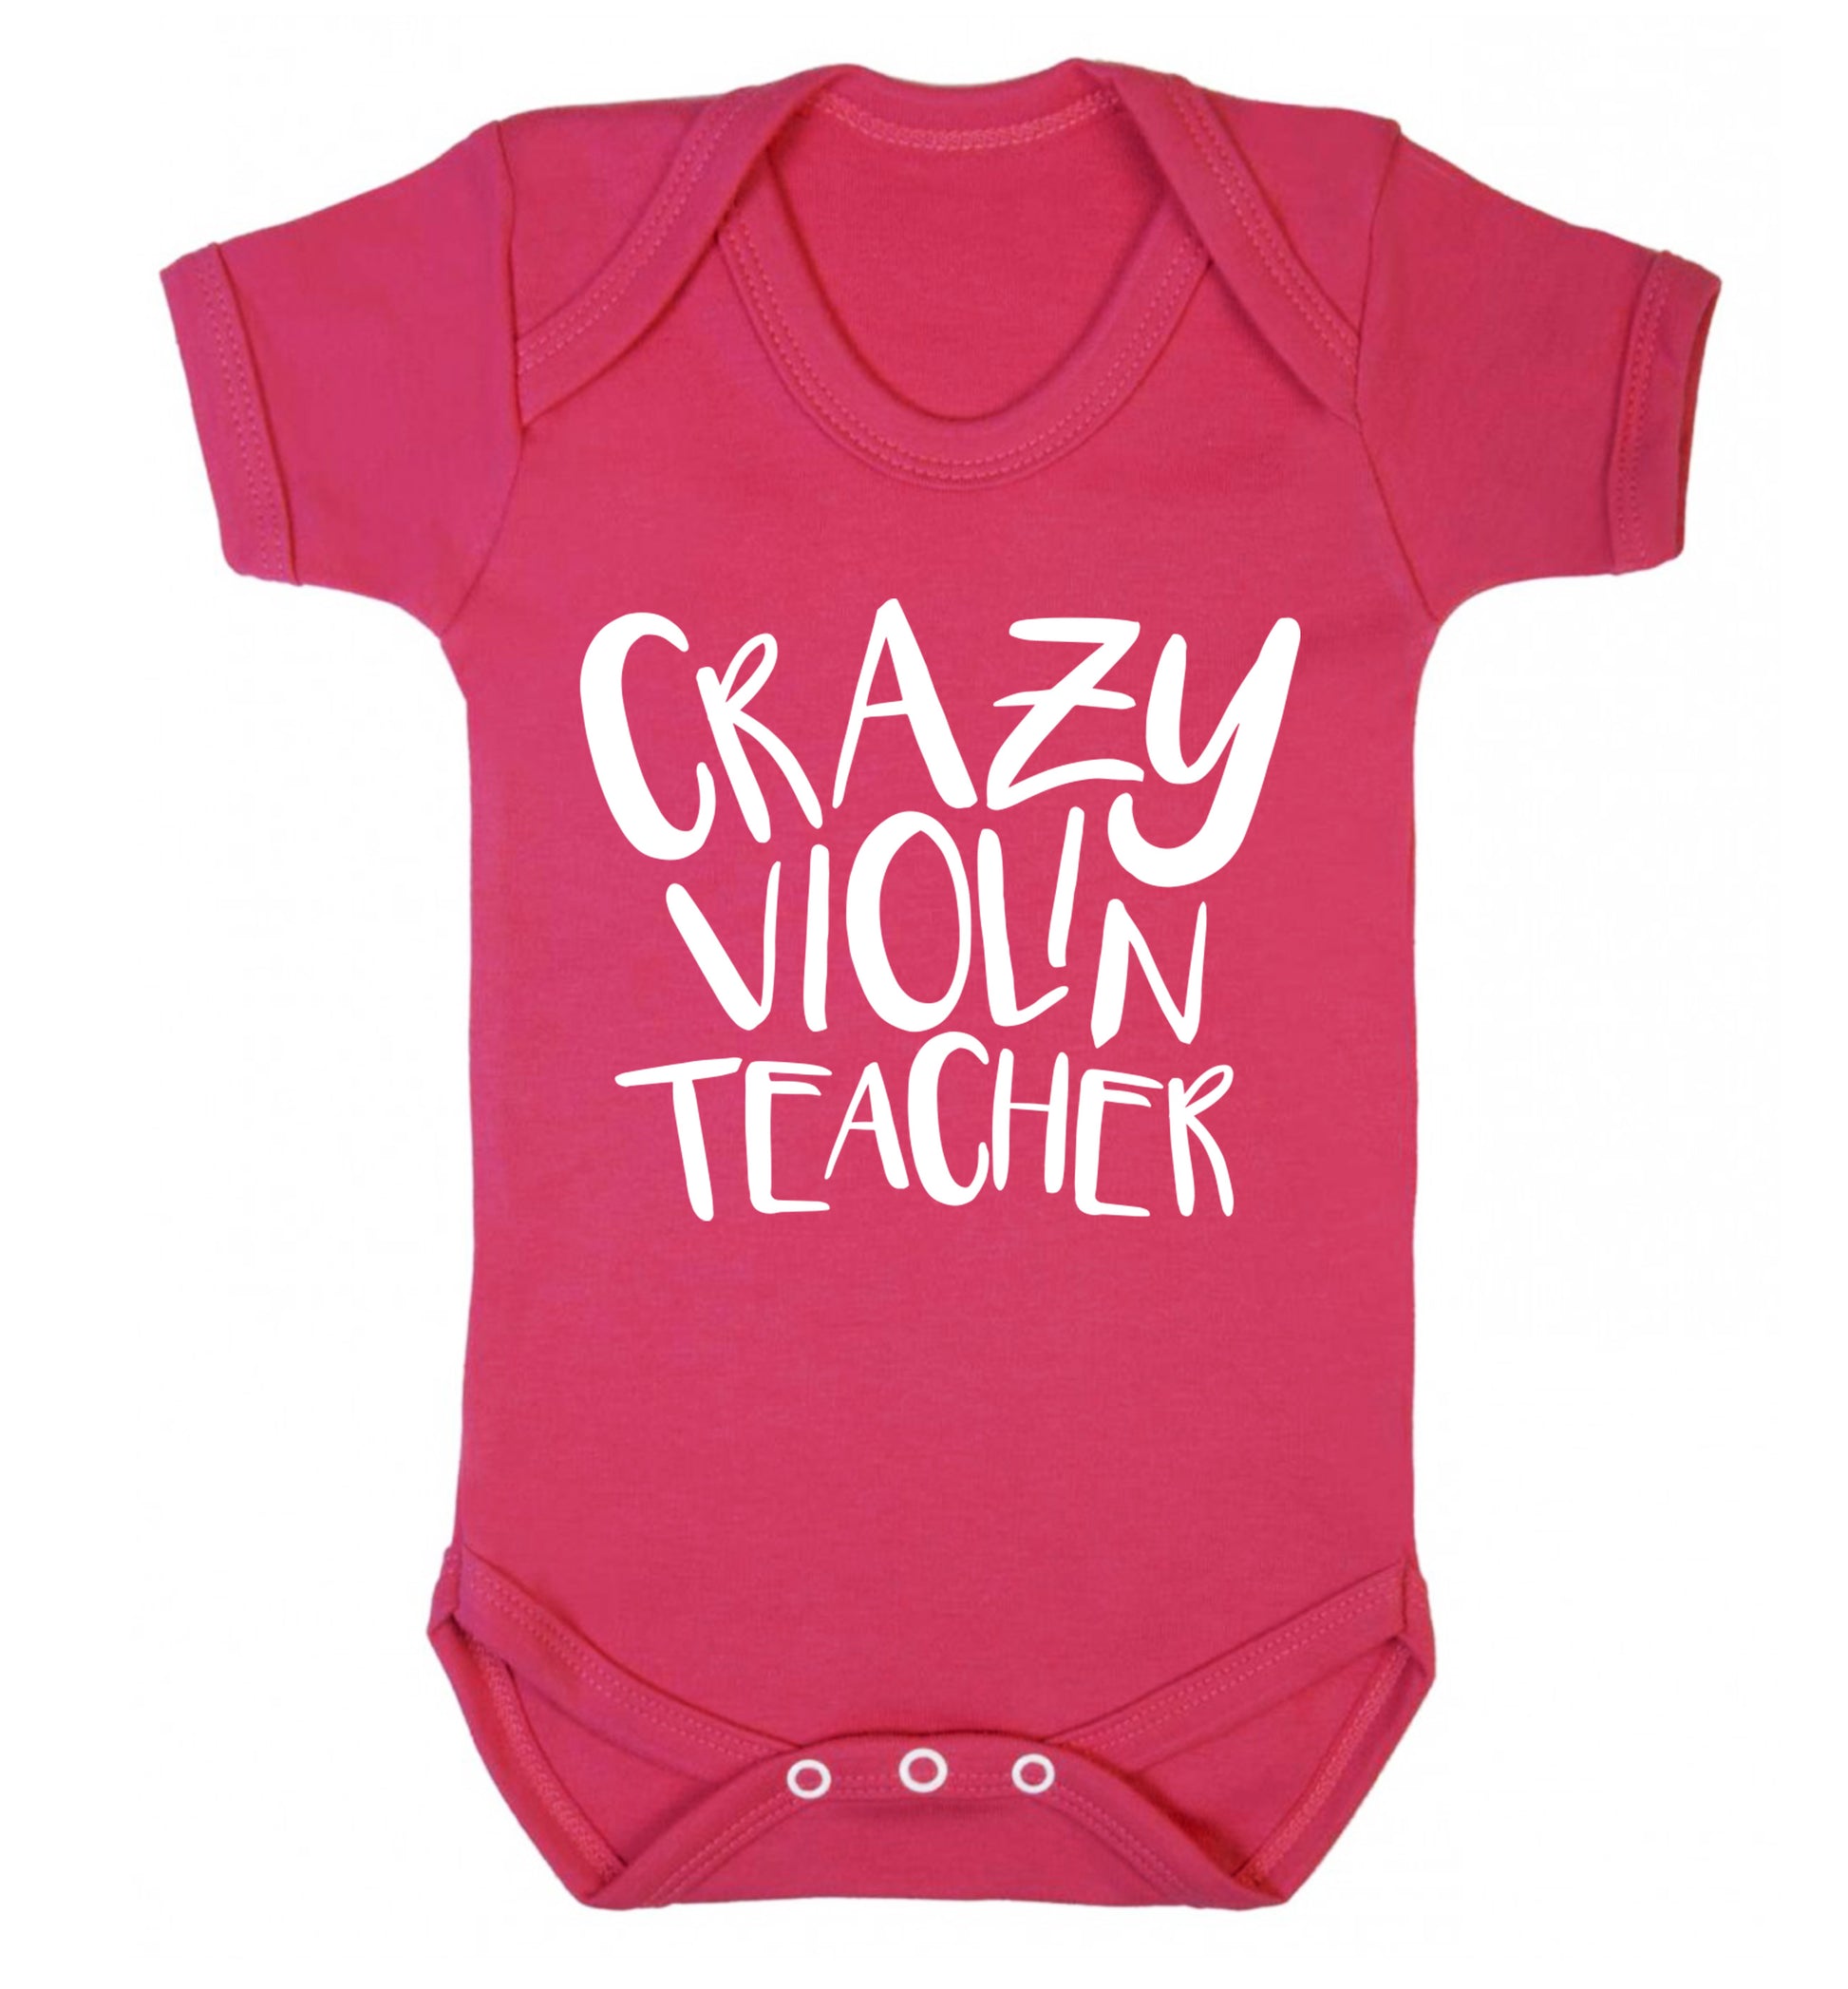 Crazy violin teacher Baby Vest dark pink 18-24 months